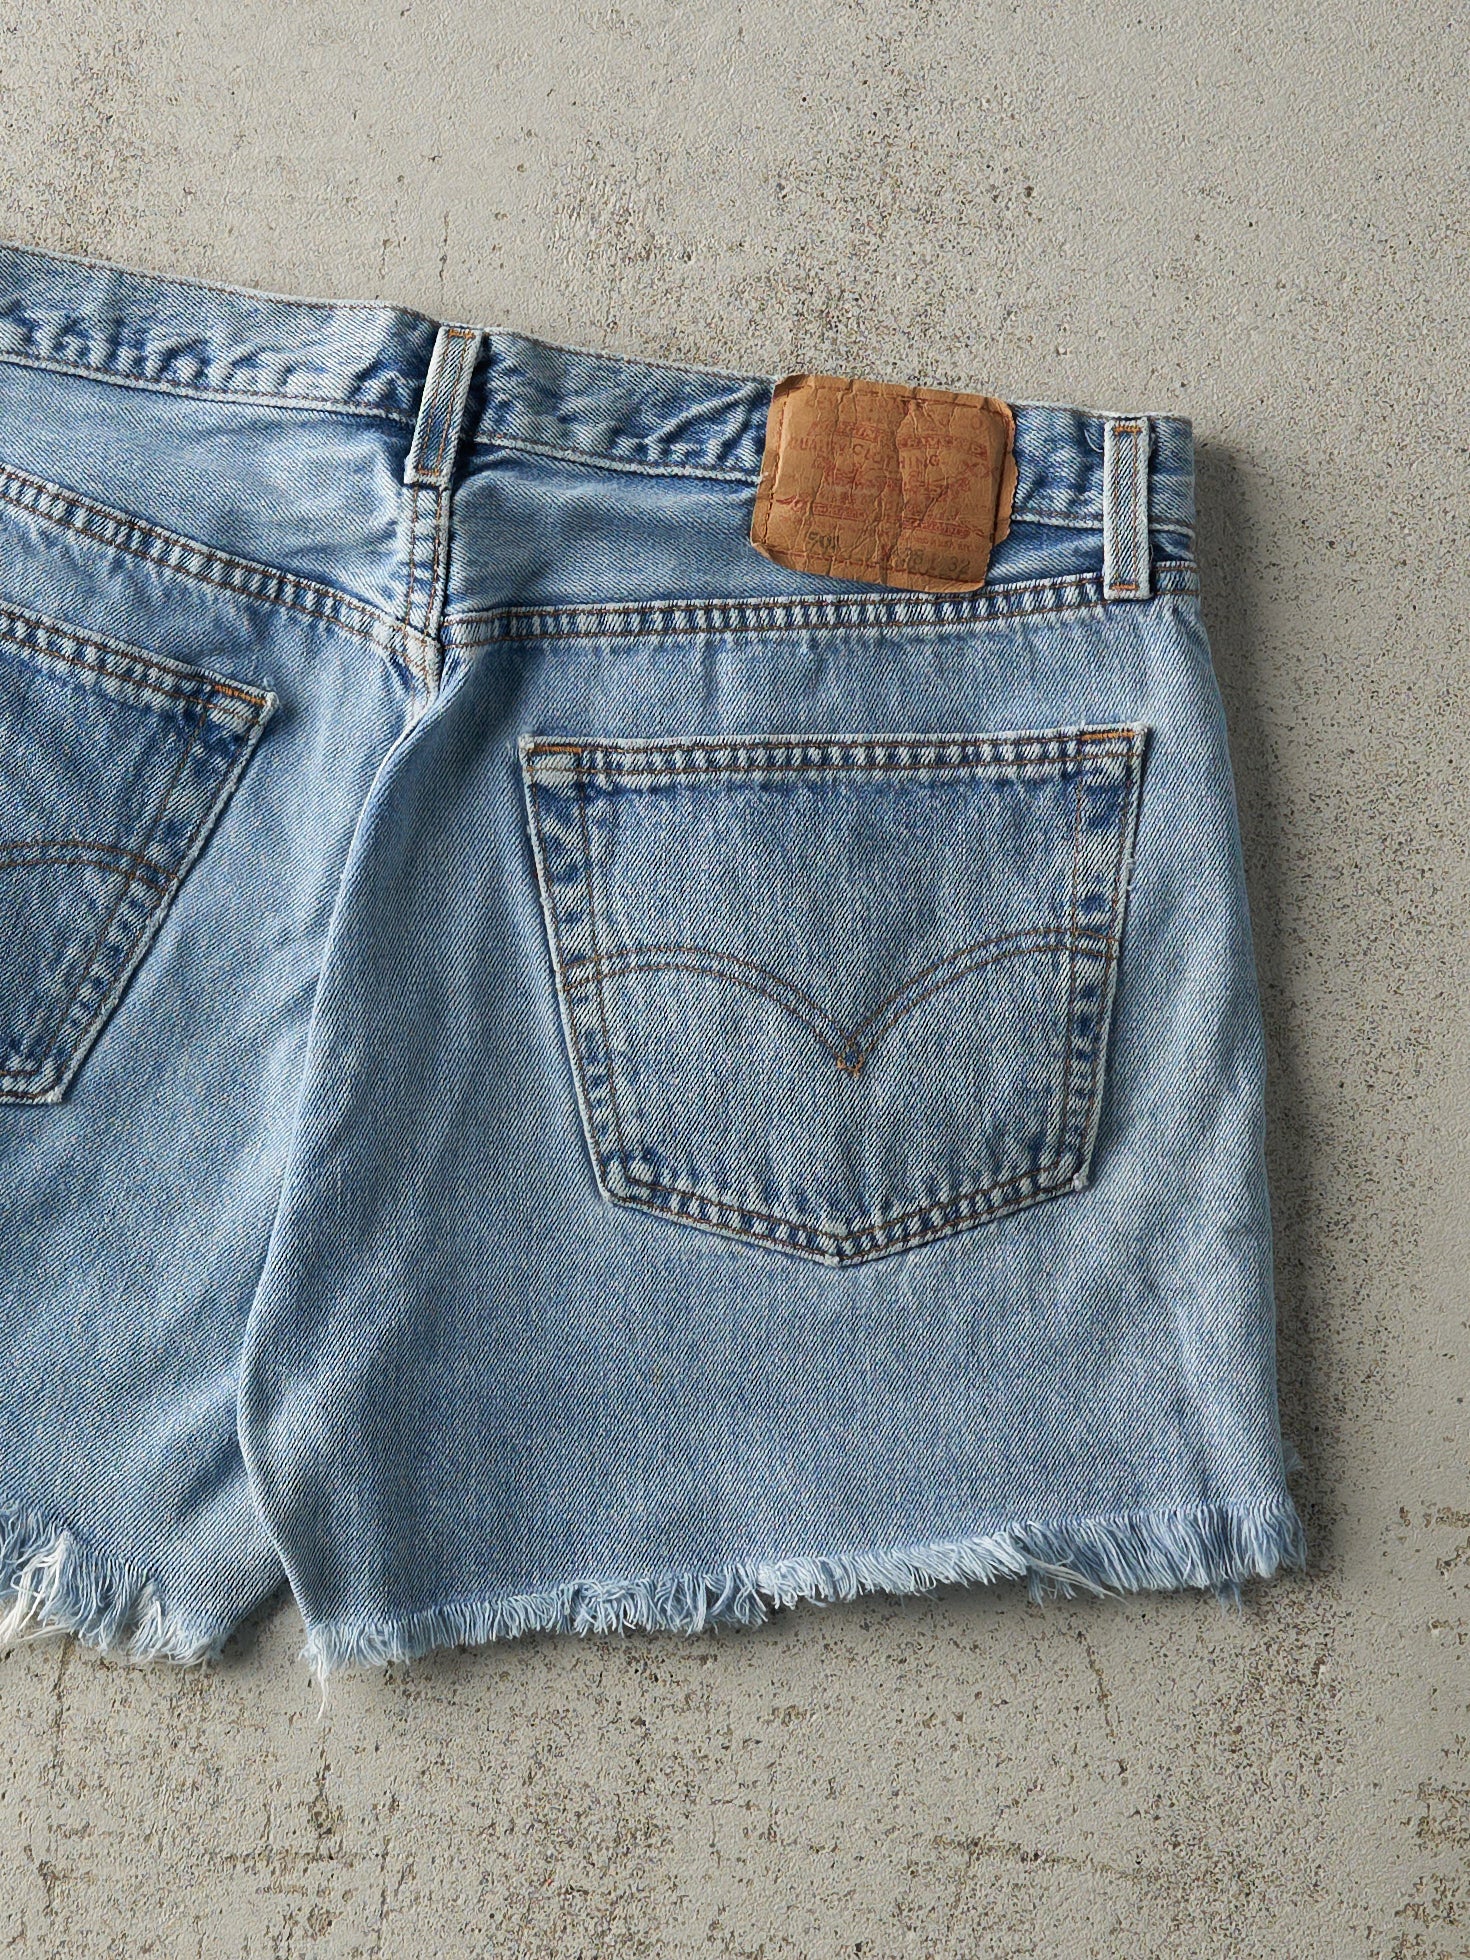 Vintage 90s Light Wash Levi's 501 Cut Off Jean Shorts (36x4)